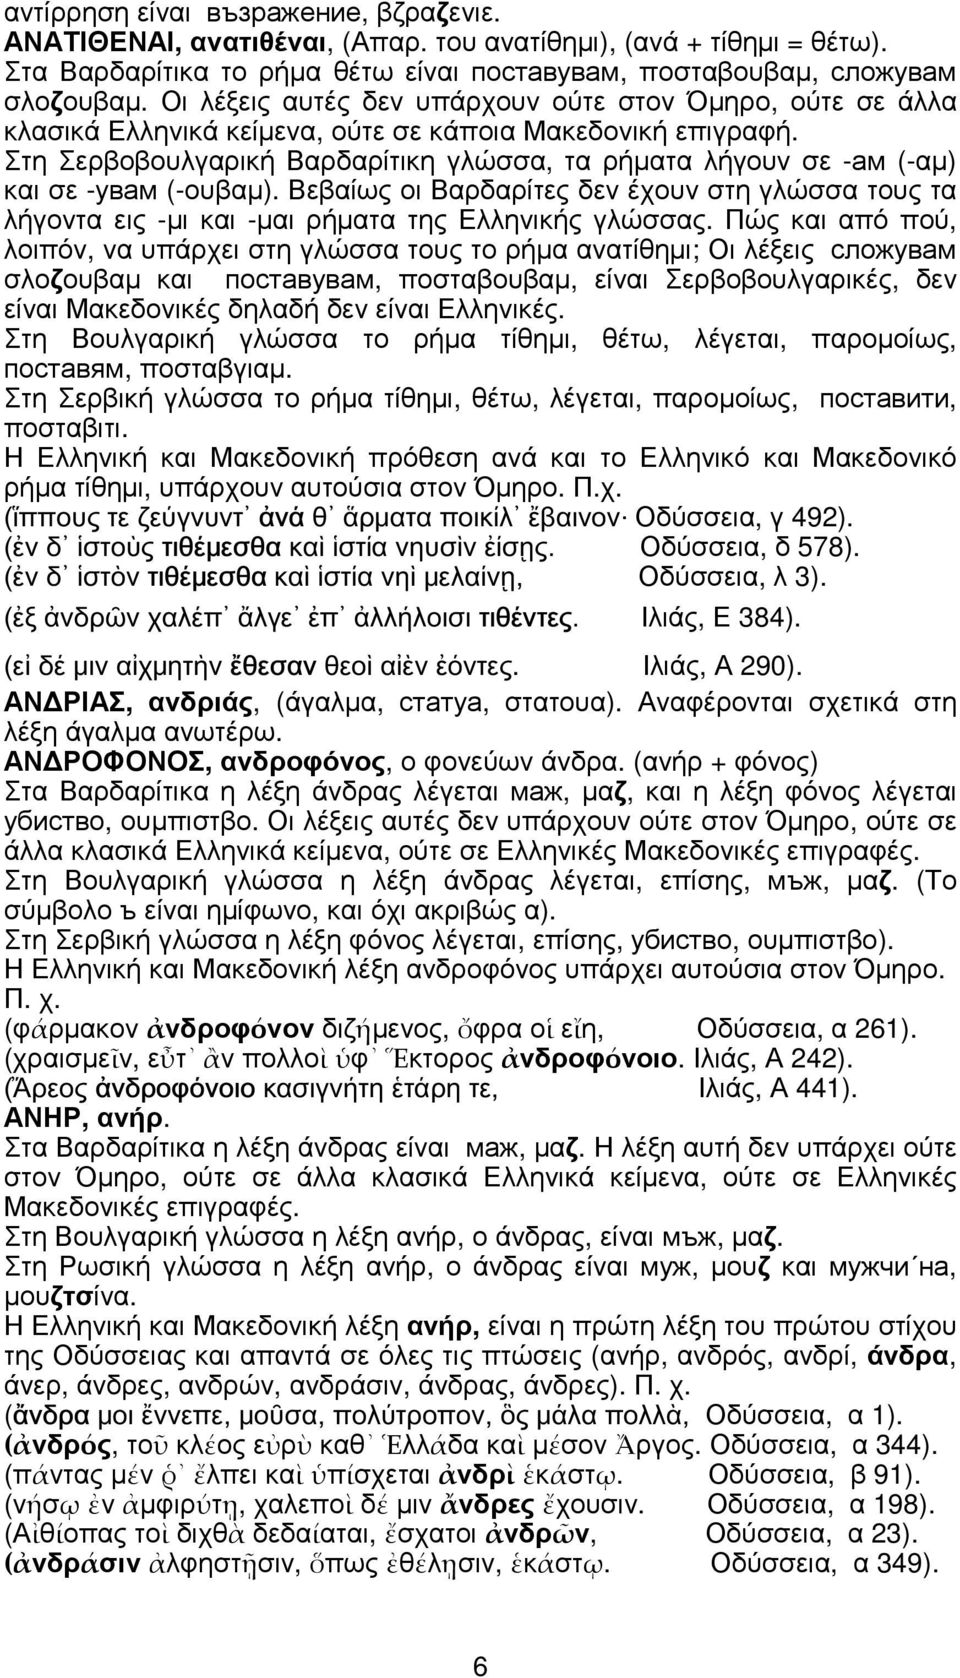 Στη Σερβοβουλγαρική Βαρδαρίτικη γλώσσα, τα ρήµατα λήγουν σε -ам (-αµ) και σε -увам (-ουβαµ). Βεβαίως οι Βαρδαρίτες δεν έχουν στη γλώσσα τους τα λήγοντα εις -µι και -µαι ρήµατα της Ελληνικής γλώσσας.